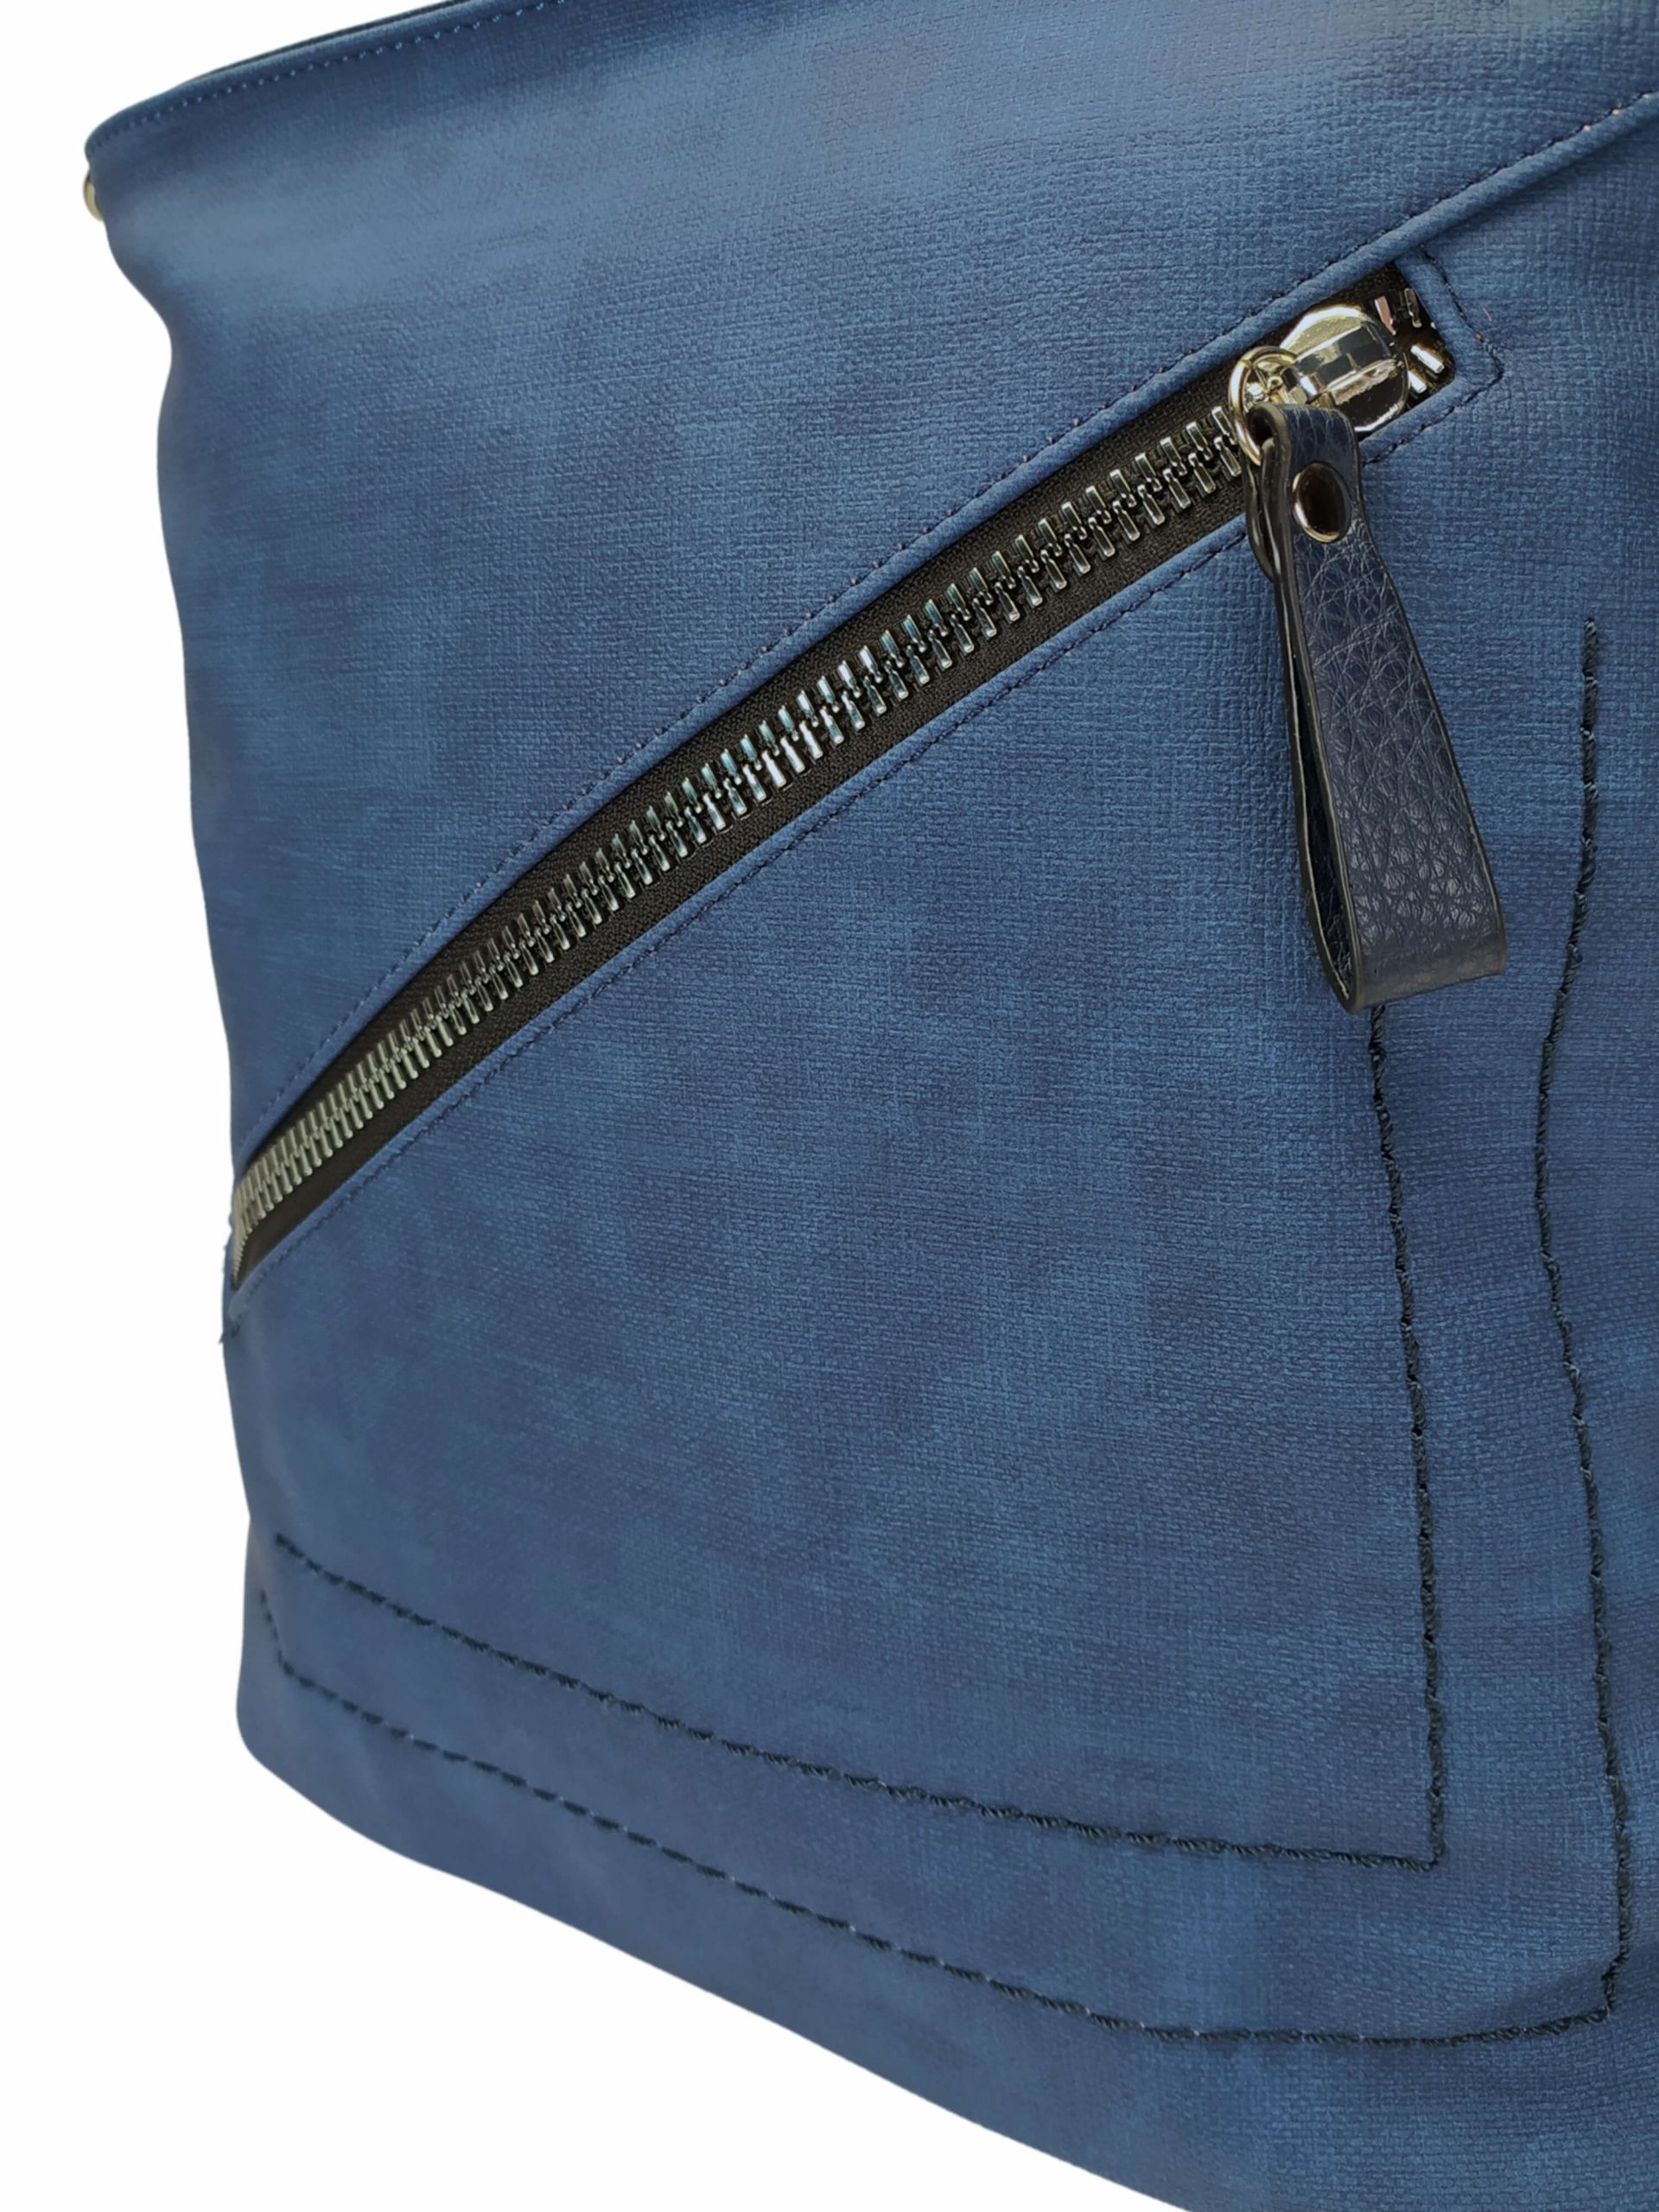 Střední středně modrý kabelko-batoh 2v1 s šikmým zipem, Tapple, H190061, detail kabelko-batohu 2v1